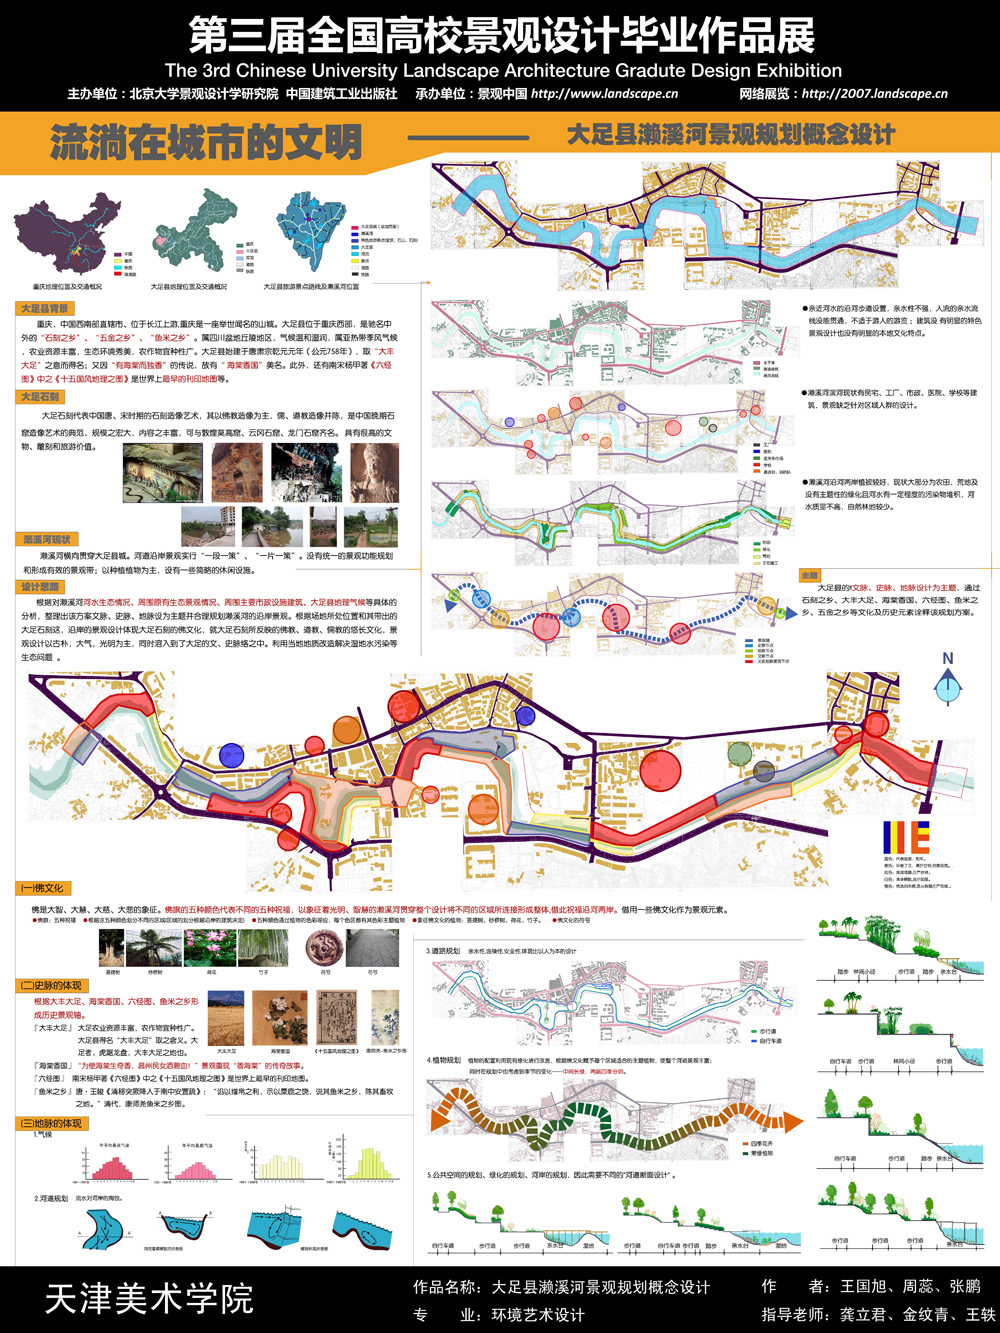 大足县濑溪河景观规划概念设计-1